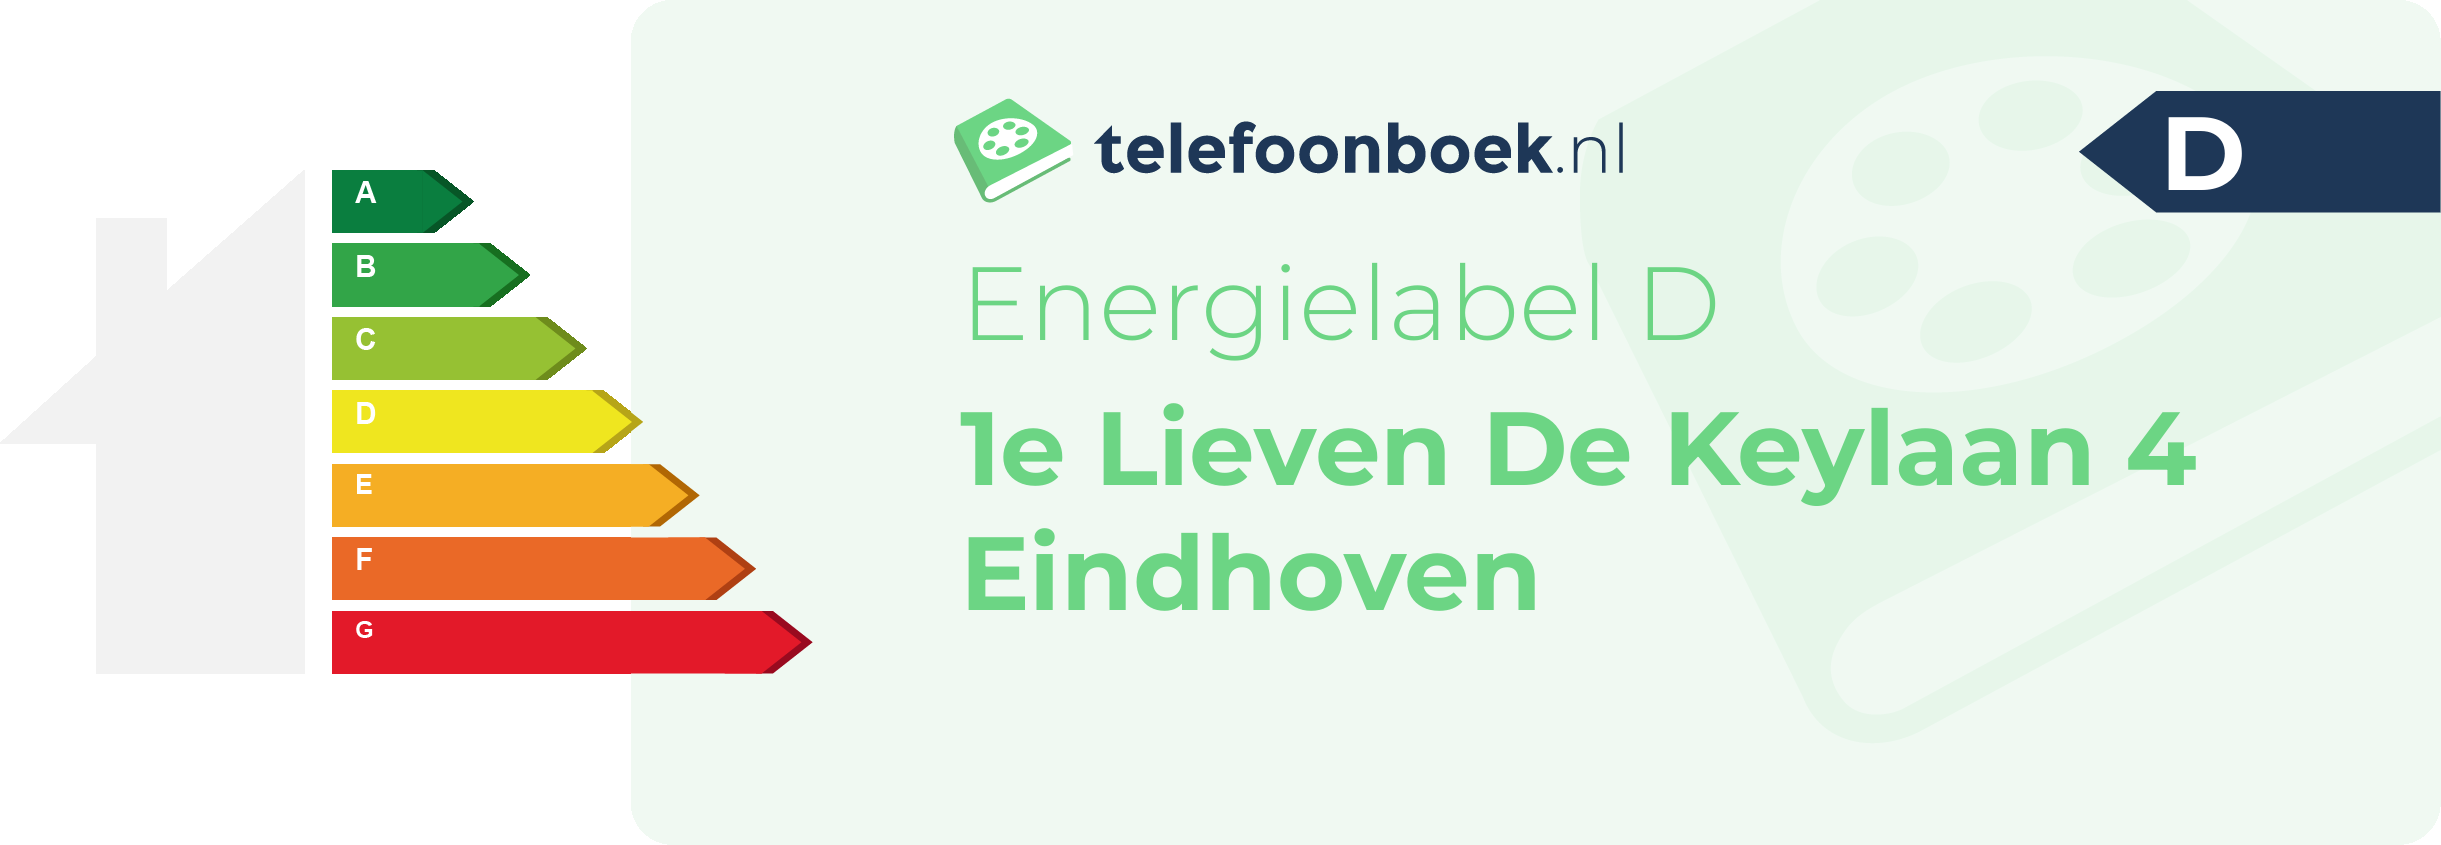 Energielabel 1e Lieven De Keylaan 4 Eindhoven